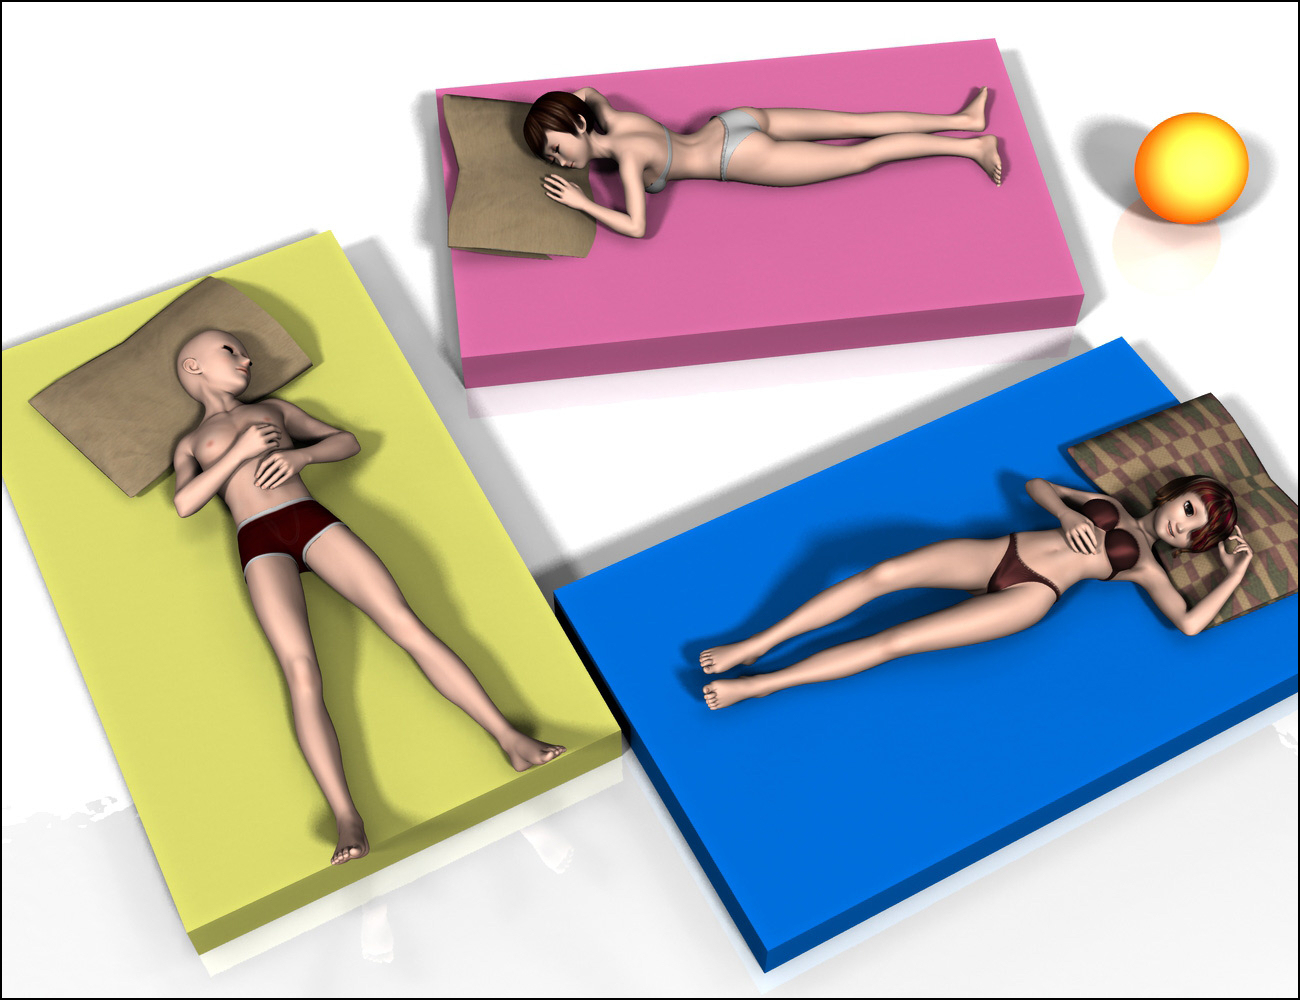 Relax & Sleep II by: MattymanxMuscleman, 3D Models by Daz 3D